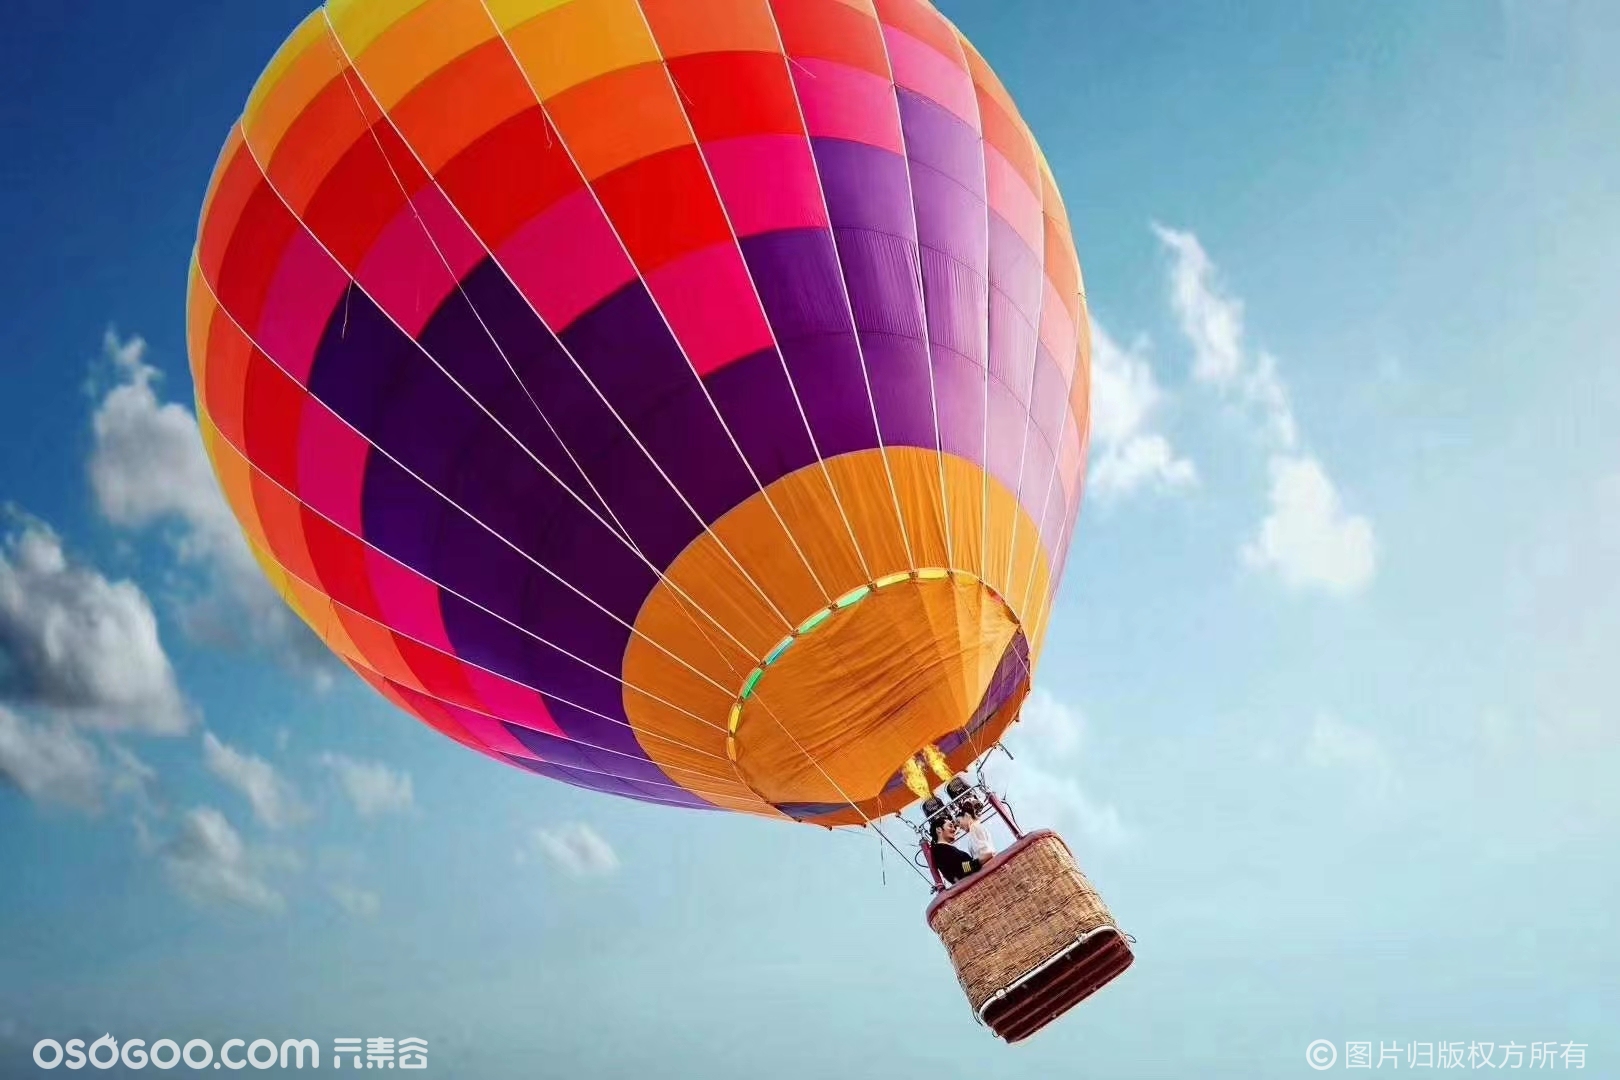 英国布里斯托国际气球节 一场华丽的天空冒险-搜狐大视野-搜狐新闻